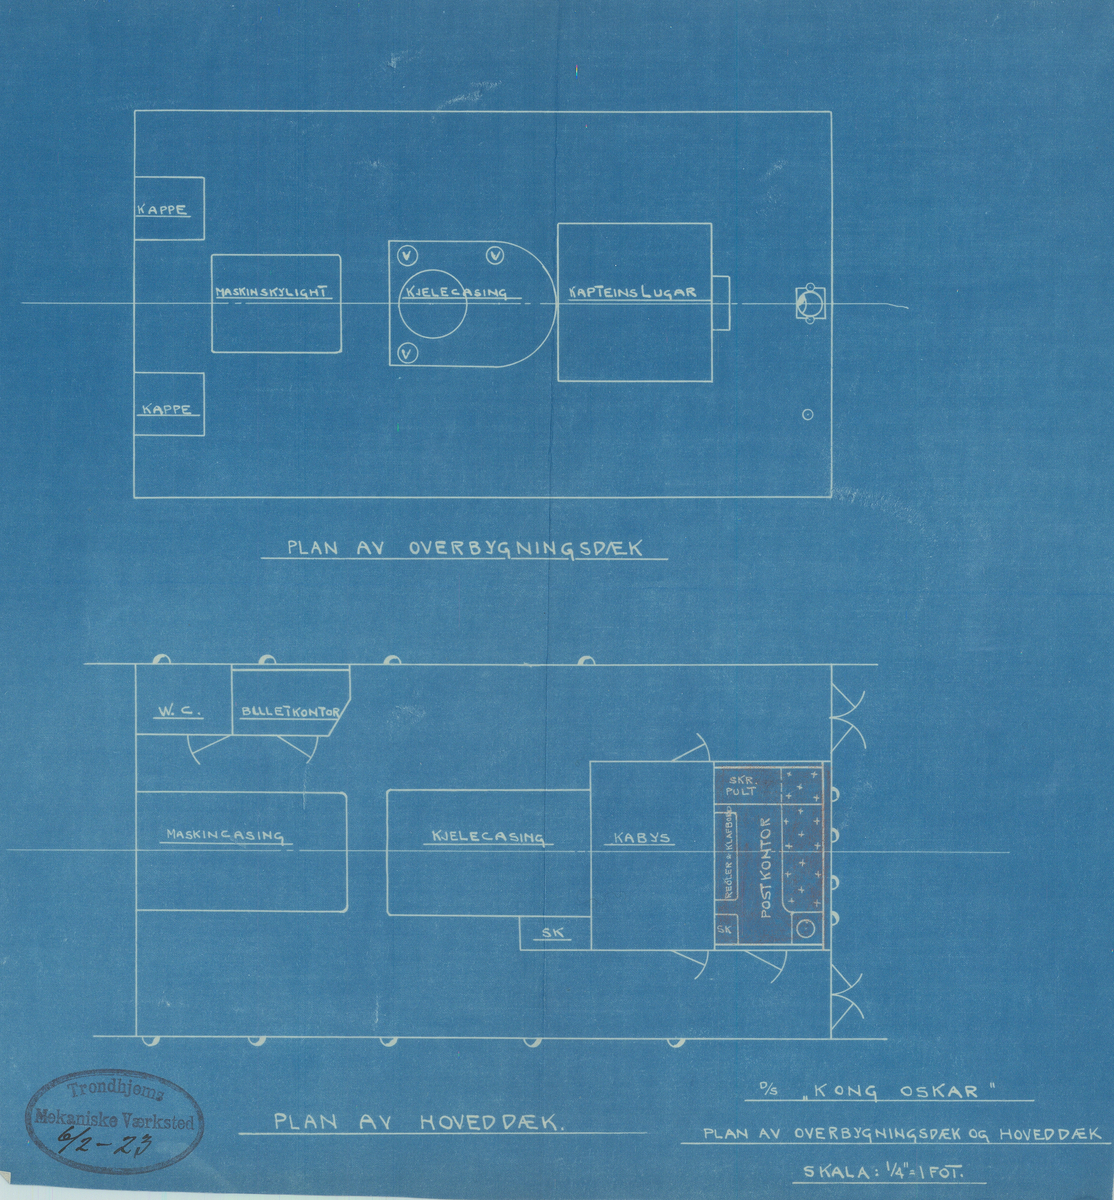 Blåkopi av tegning som viser plan av overbygningsdekk og hoveddekk på D/S Kong Oskar (Oscar), med markering av postarrangement.